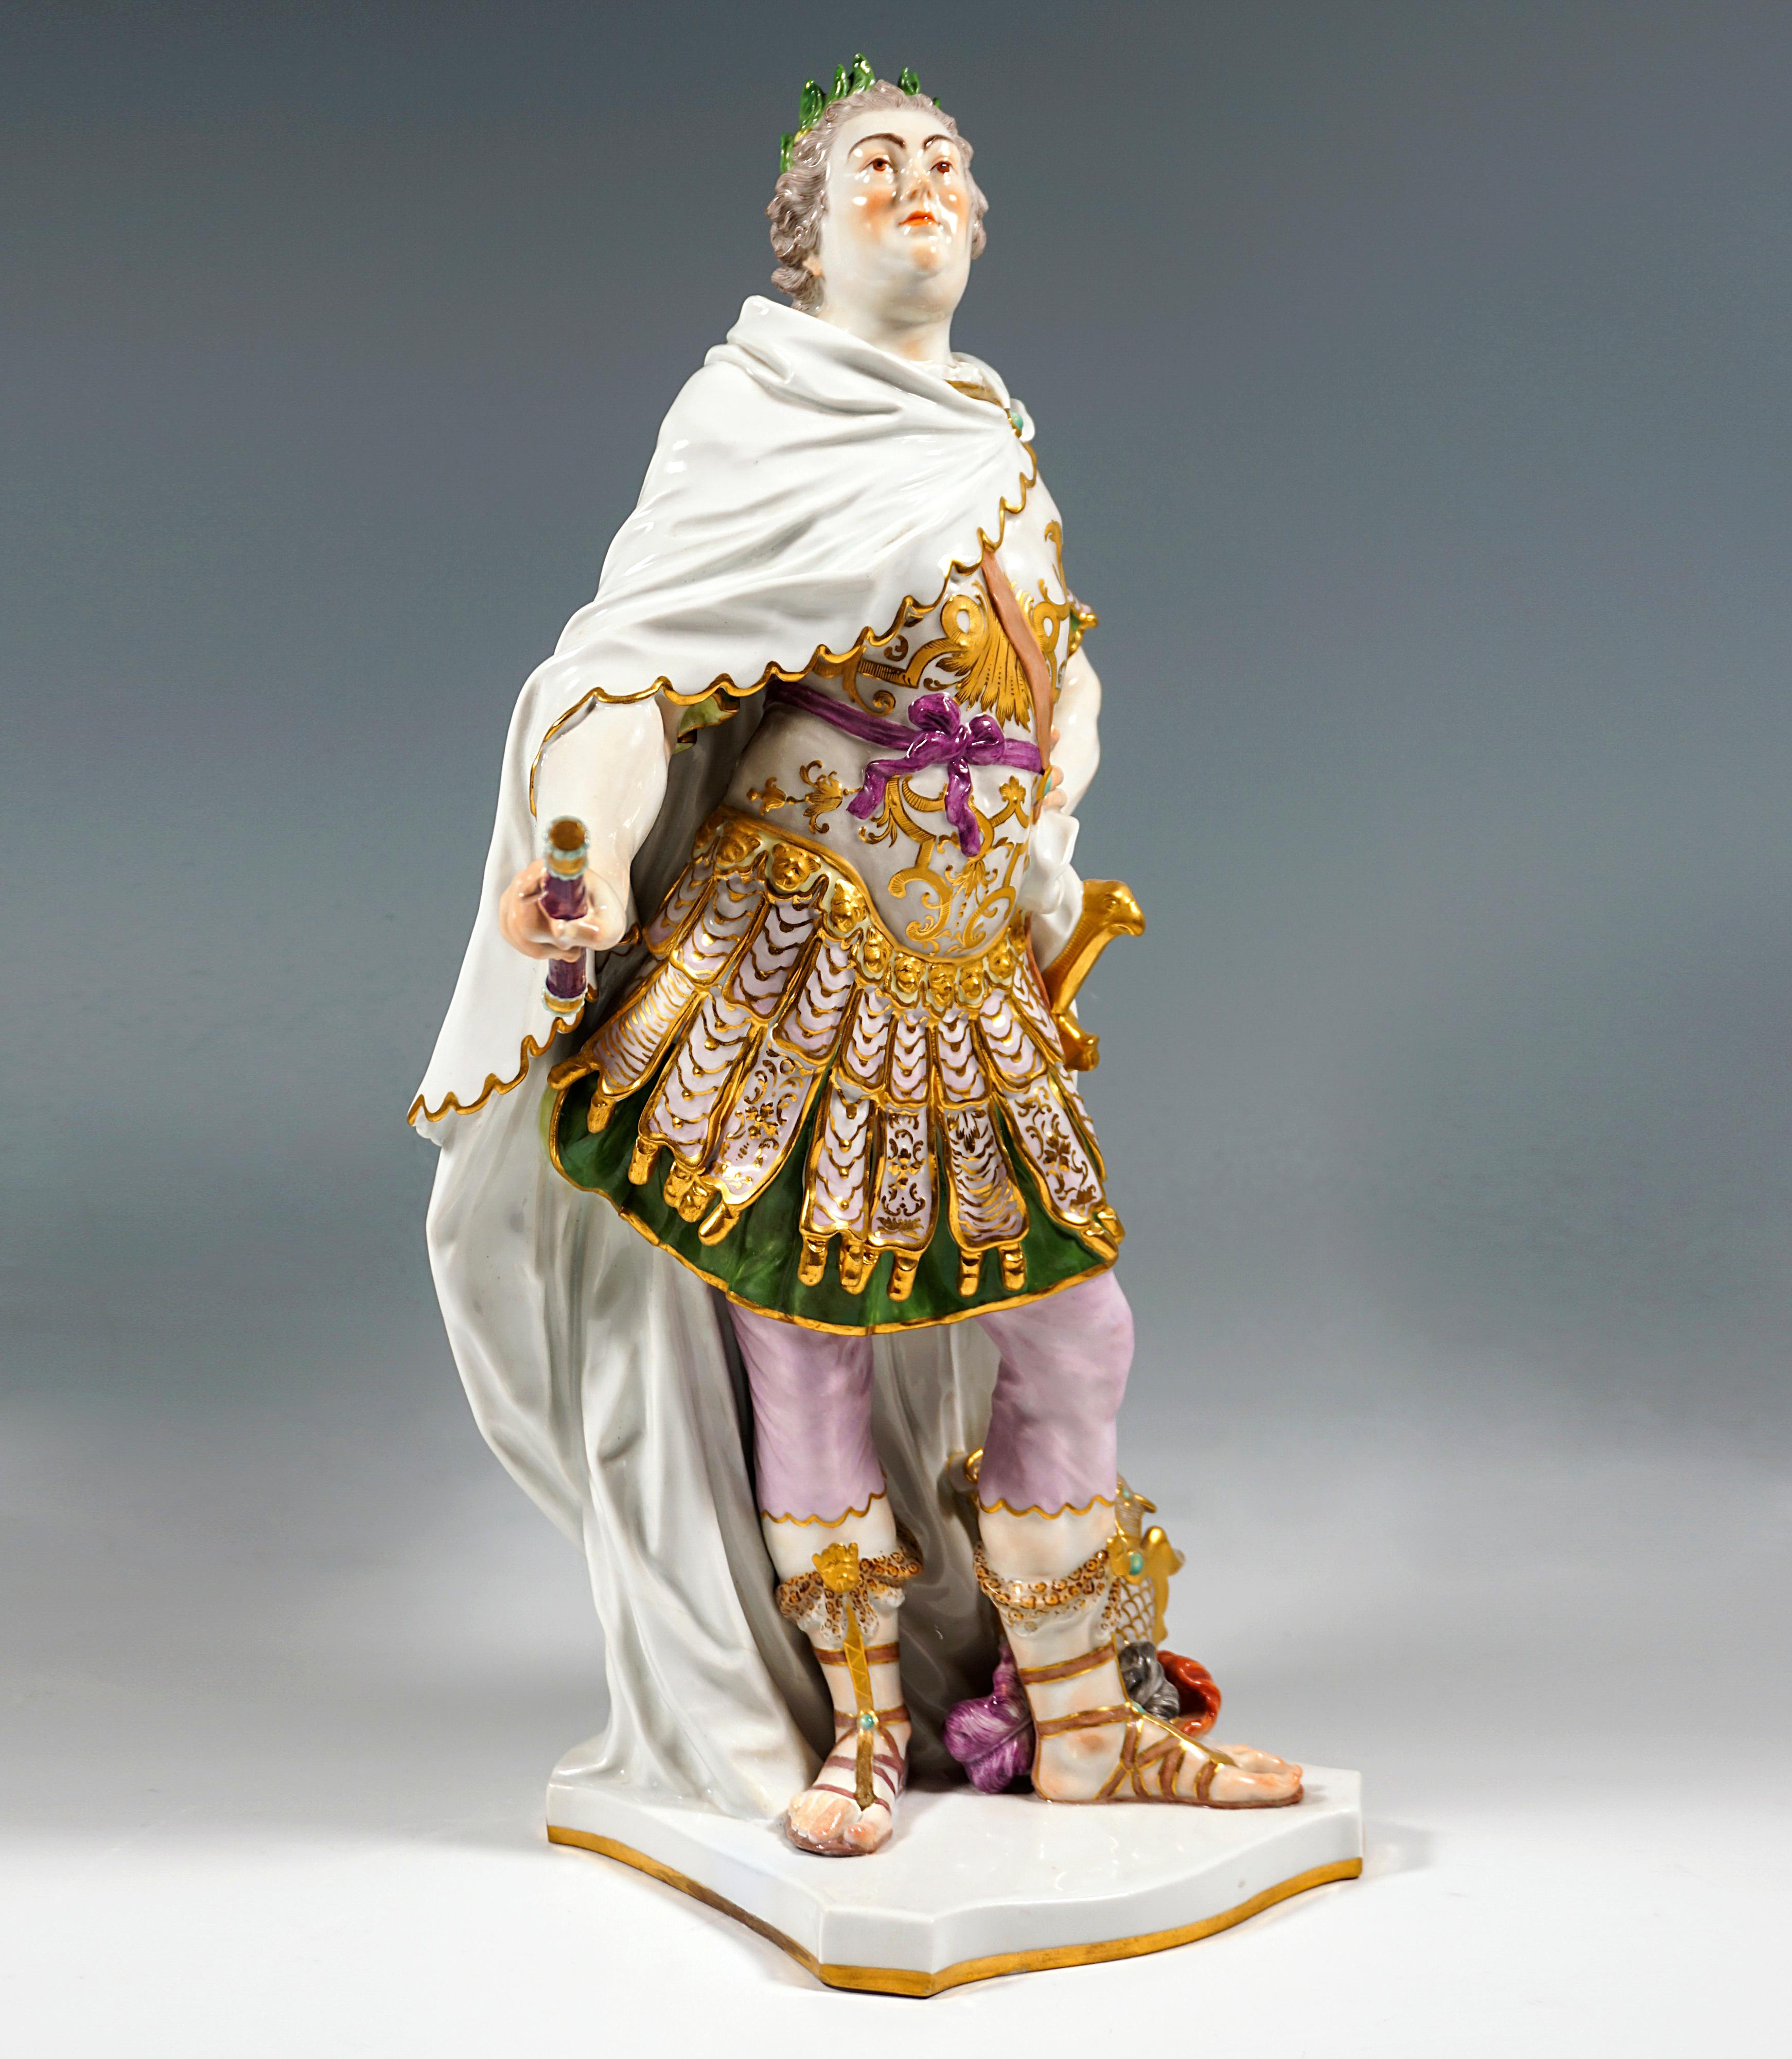 Très rare et impressionnante statuette en porcelaine :
Comme tous les souverains baroques, Auguste le Fort et son fils Auguste III ont cultivé les démonstrations de leur puissance pour représenter et légitimer leur règne. Leurs mises en scène